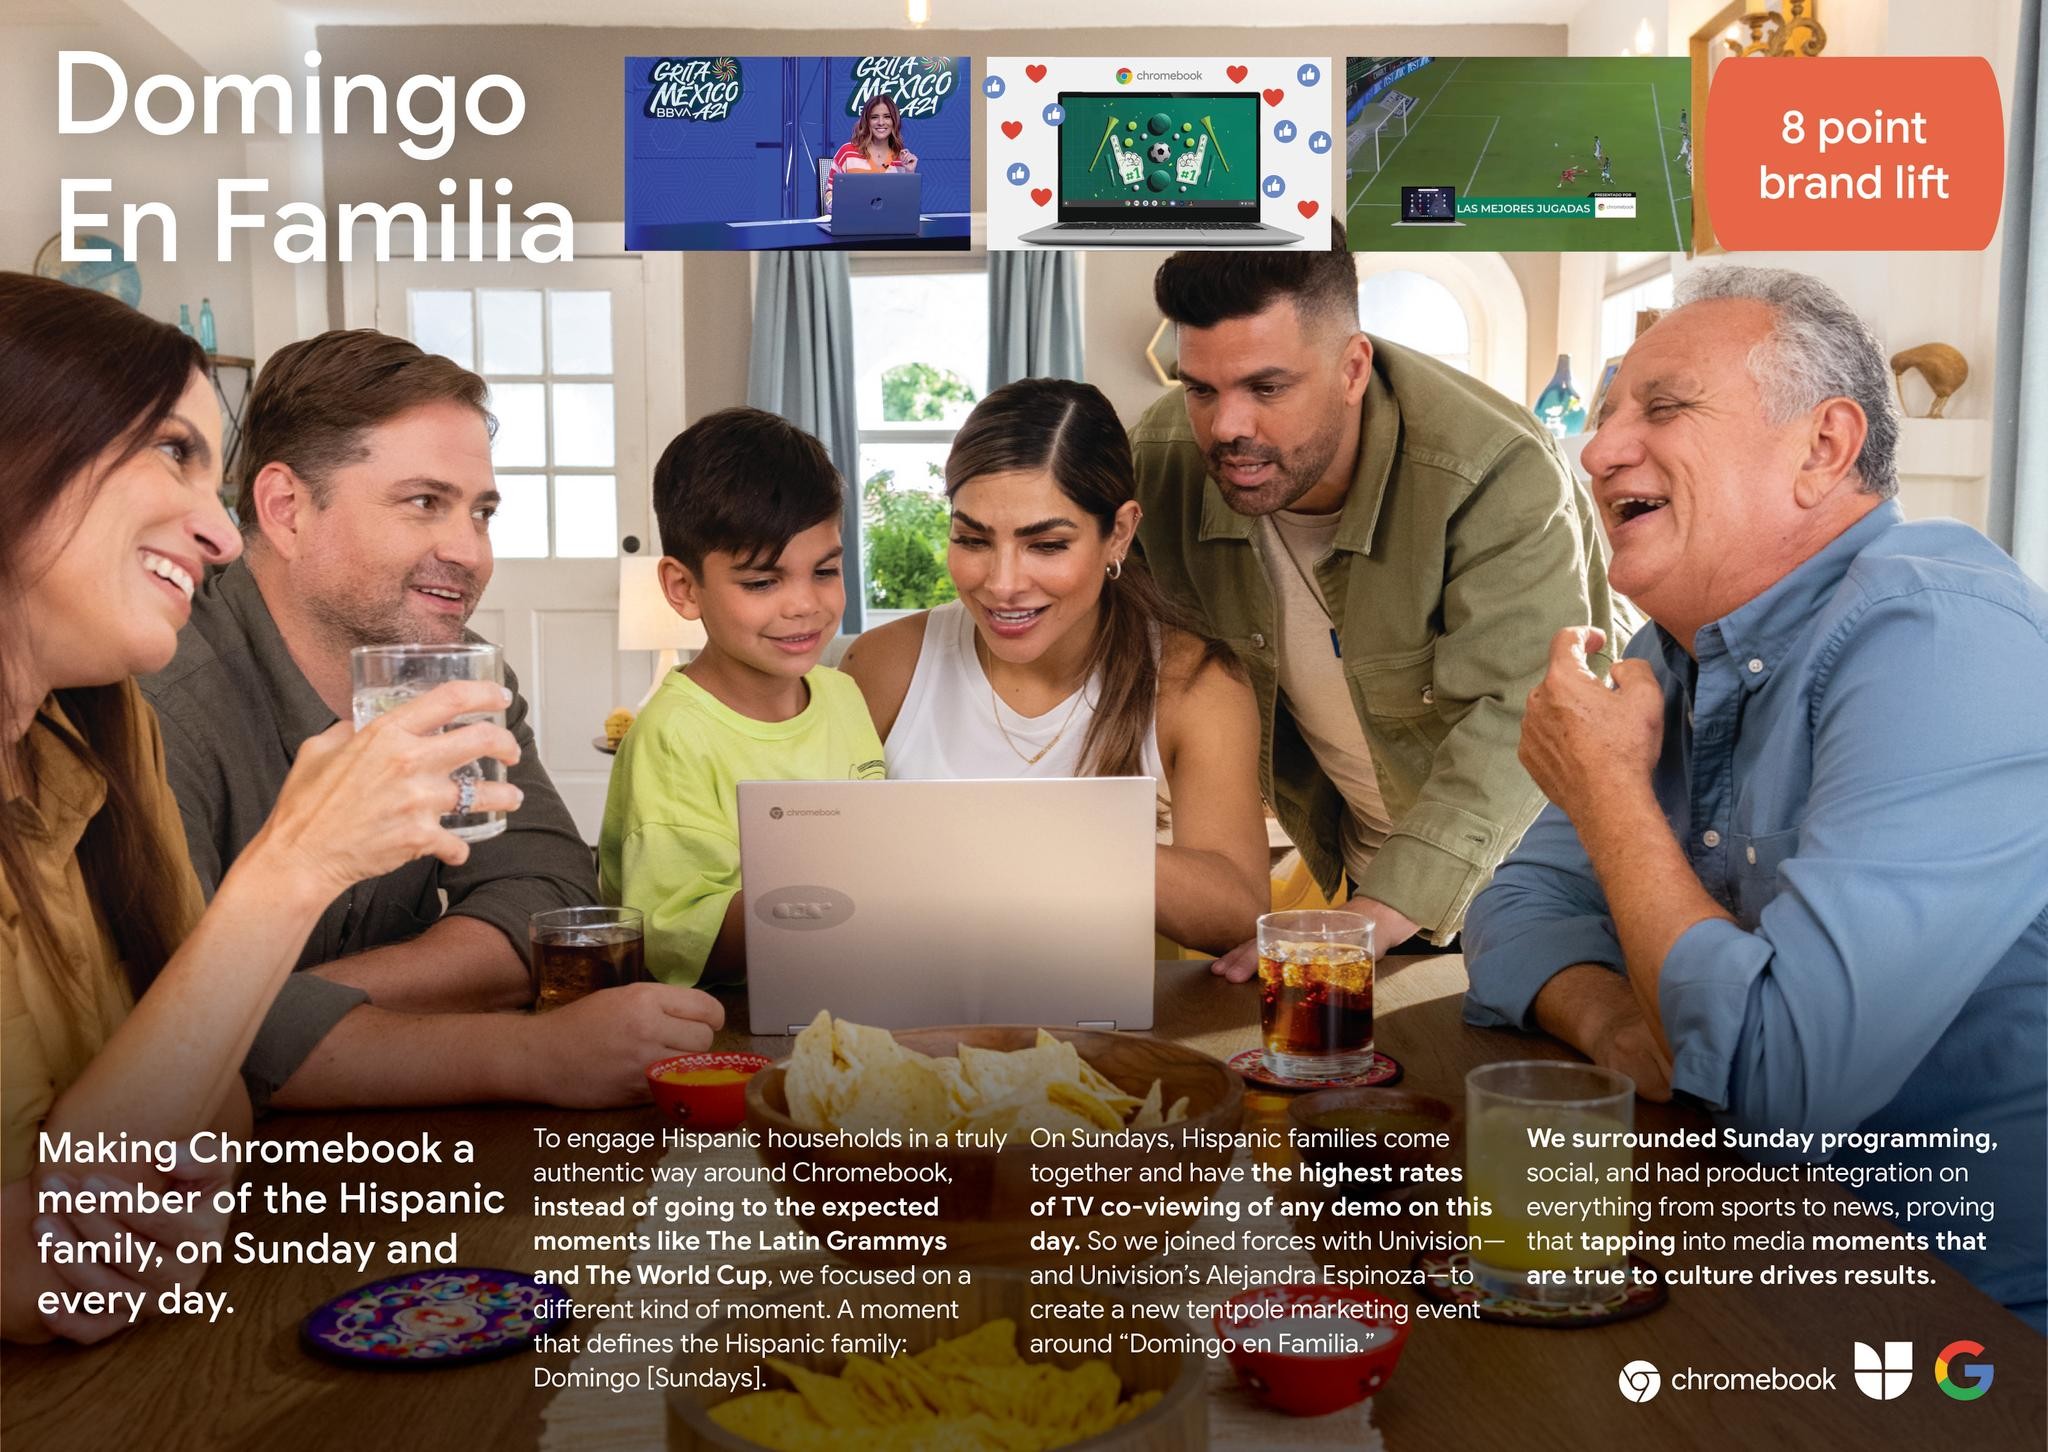 Google Chromebook: Domingo En Familia